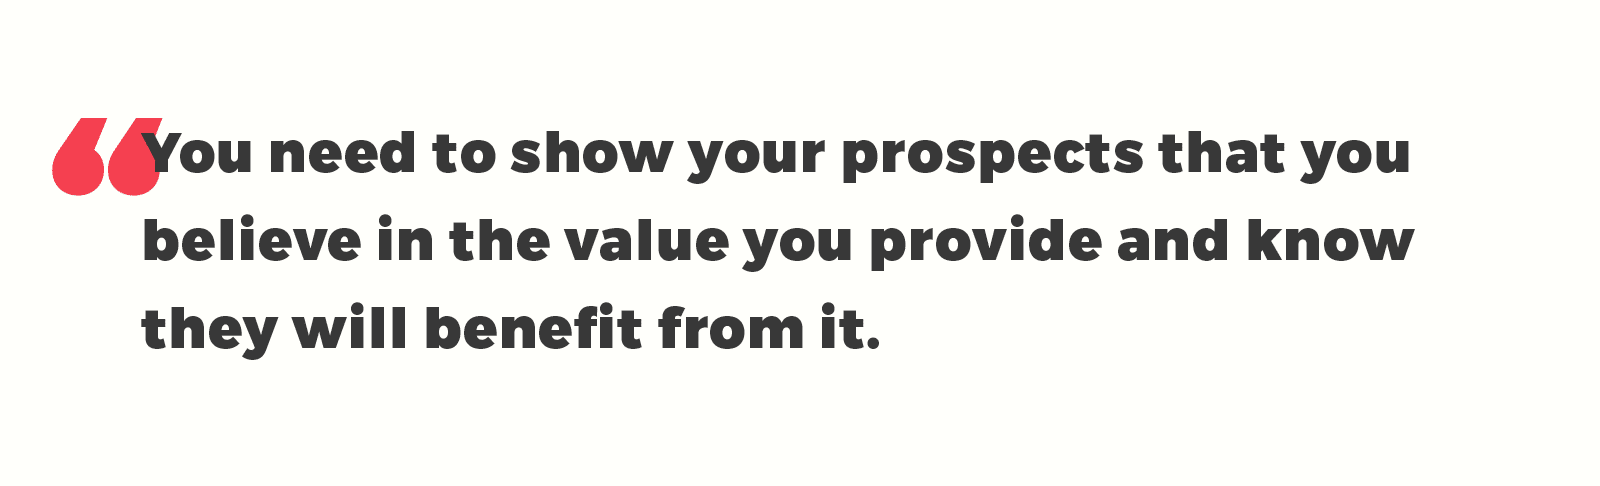 show value you provide